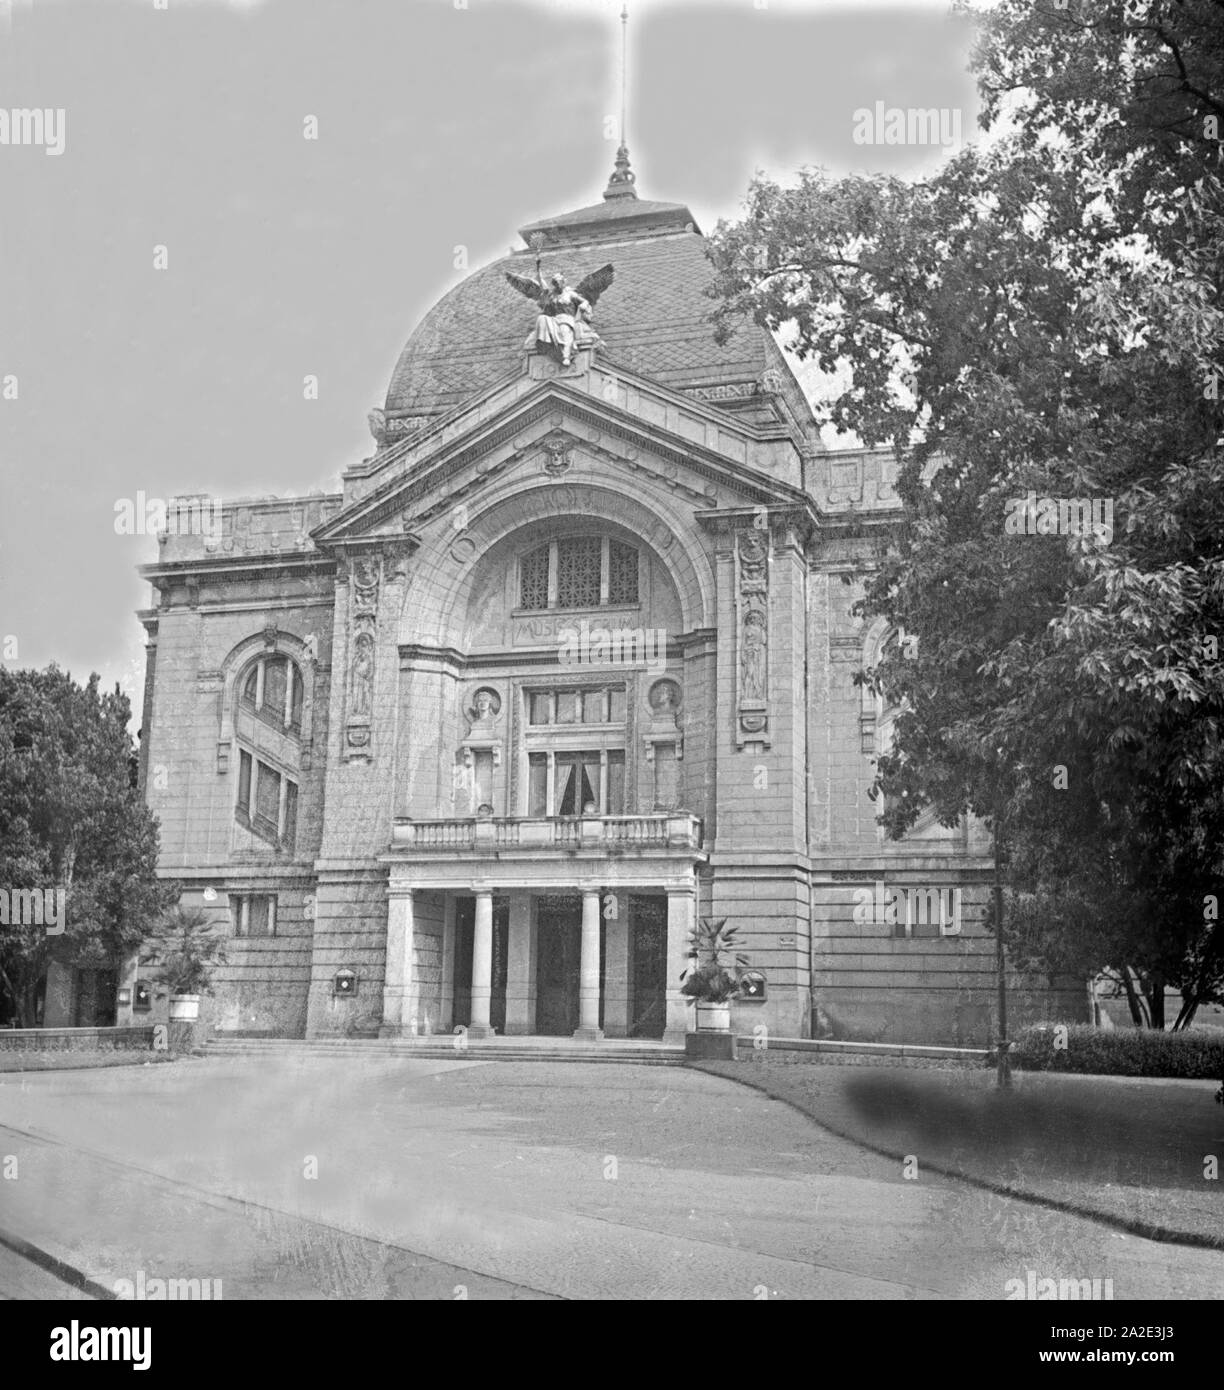 Das Theater in Gera, Großes Haus, Deutschland 1930er Jahre. Gera theatres (Grosses Haus), Germany 1930s. Stock Photo